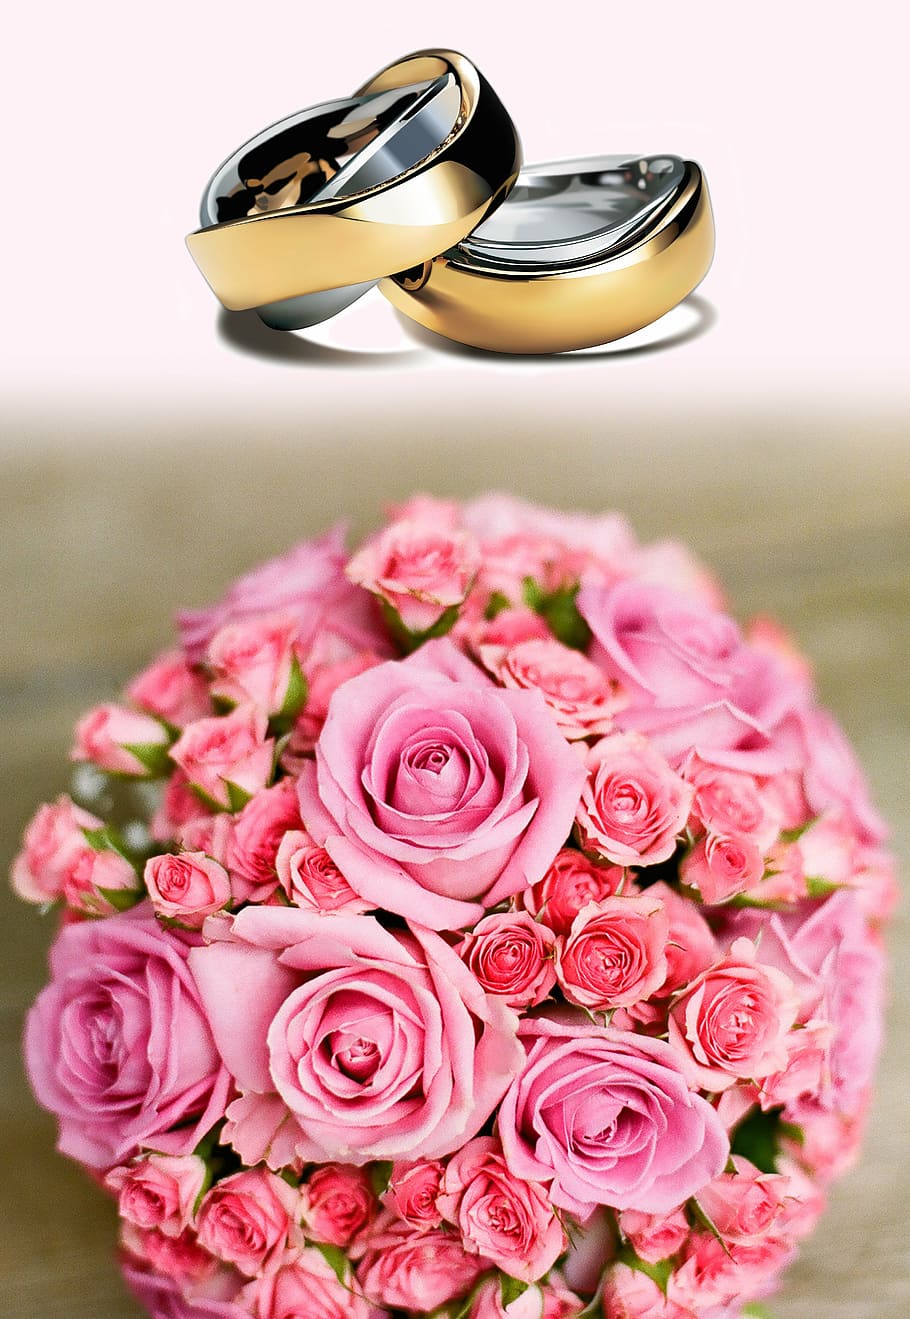 dua, cincin pernikahan berwarna emas, karangan bunga, mawar, cincin kawin, pernikahan, sebelum, cinta, menikah, emas